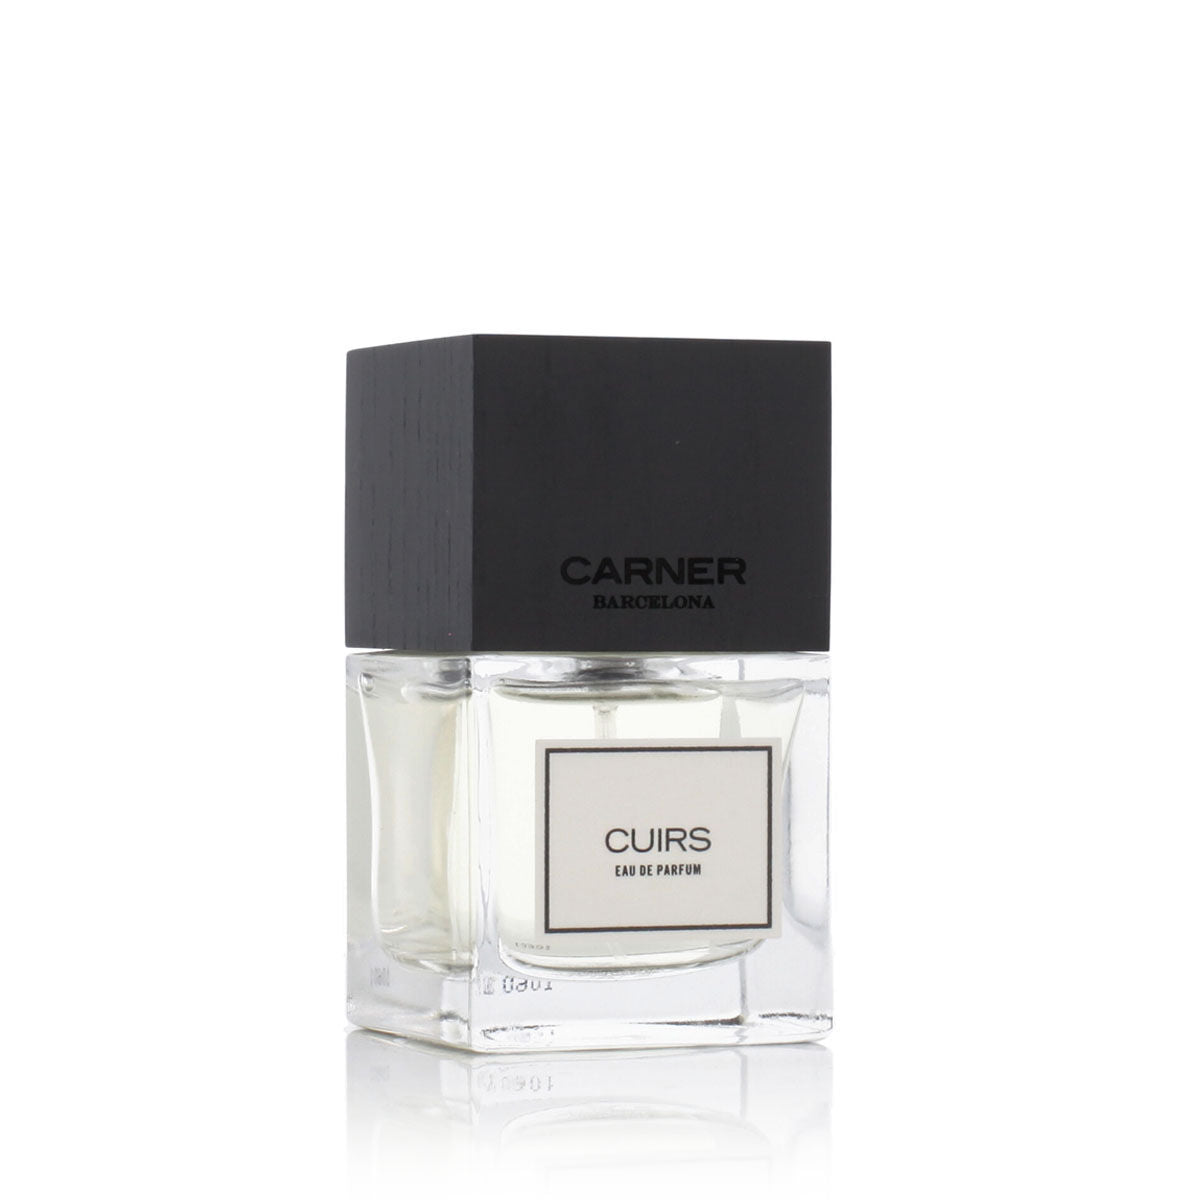 Uniseks Parfum Carner Barcelona EDP Cuirs 50 ml